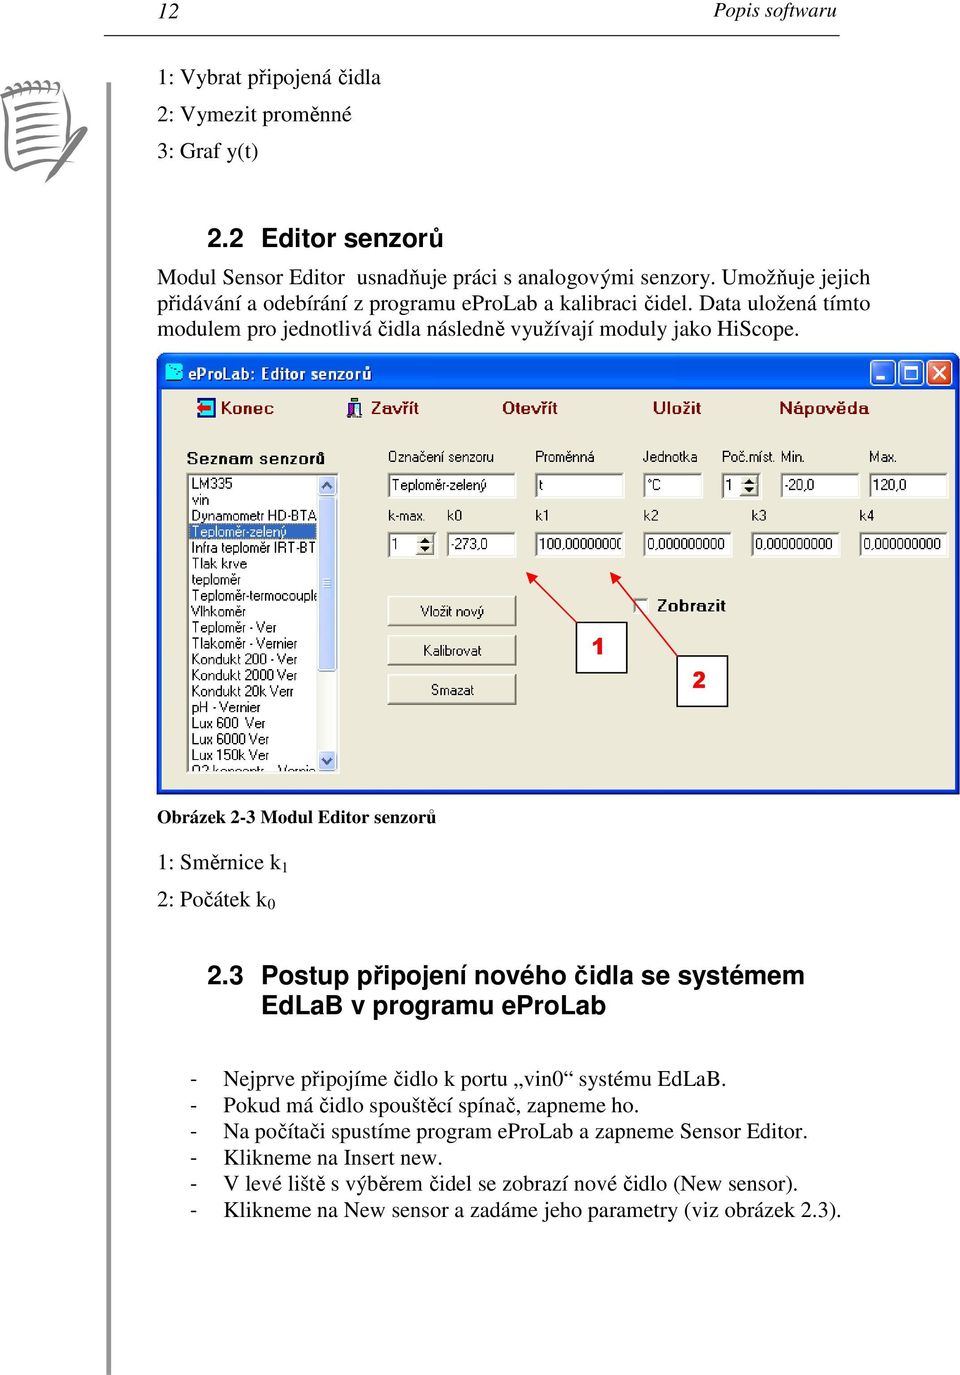 1 2 Obrázek 2-3 Modul Editor senzorů 1: Směrnice k 1 2: Počátek k 0 2.3 Postup připojení nového čidla se systémem EdLaB v programu eprolab - Nejprve připojíme čidlo k portu vin0 systému EdLaB.